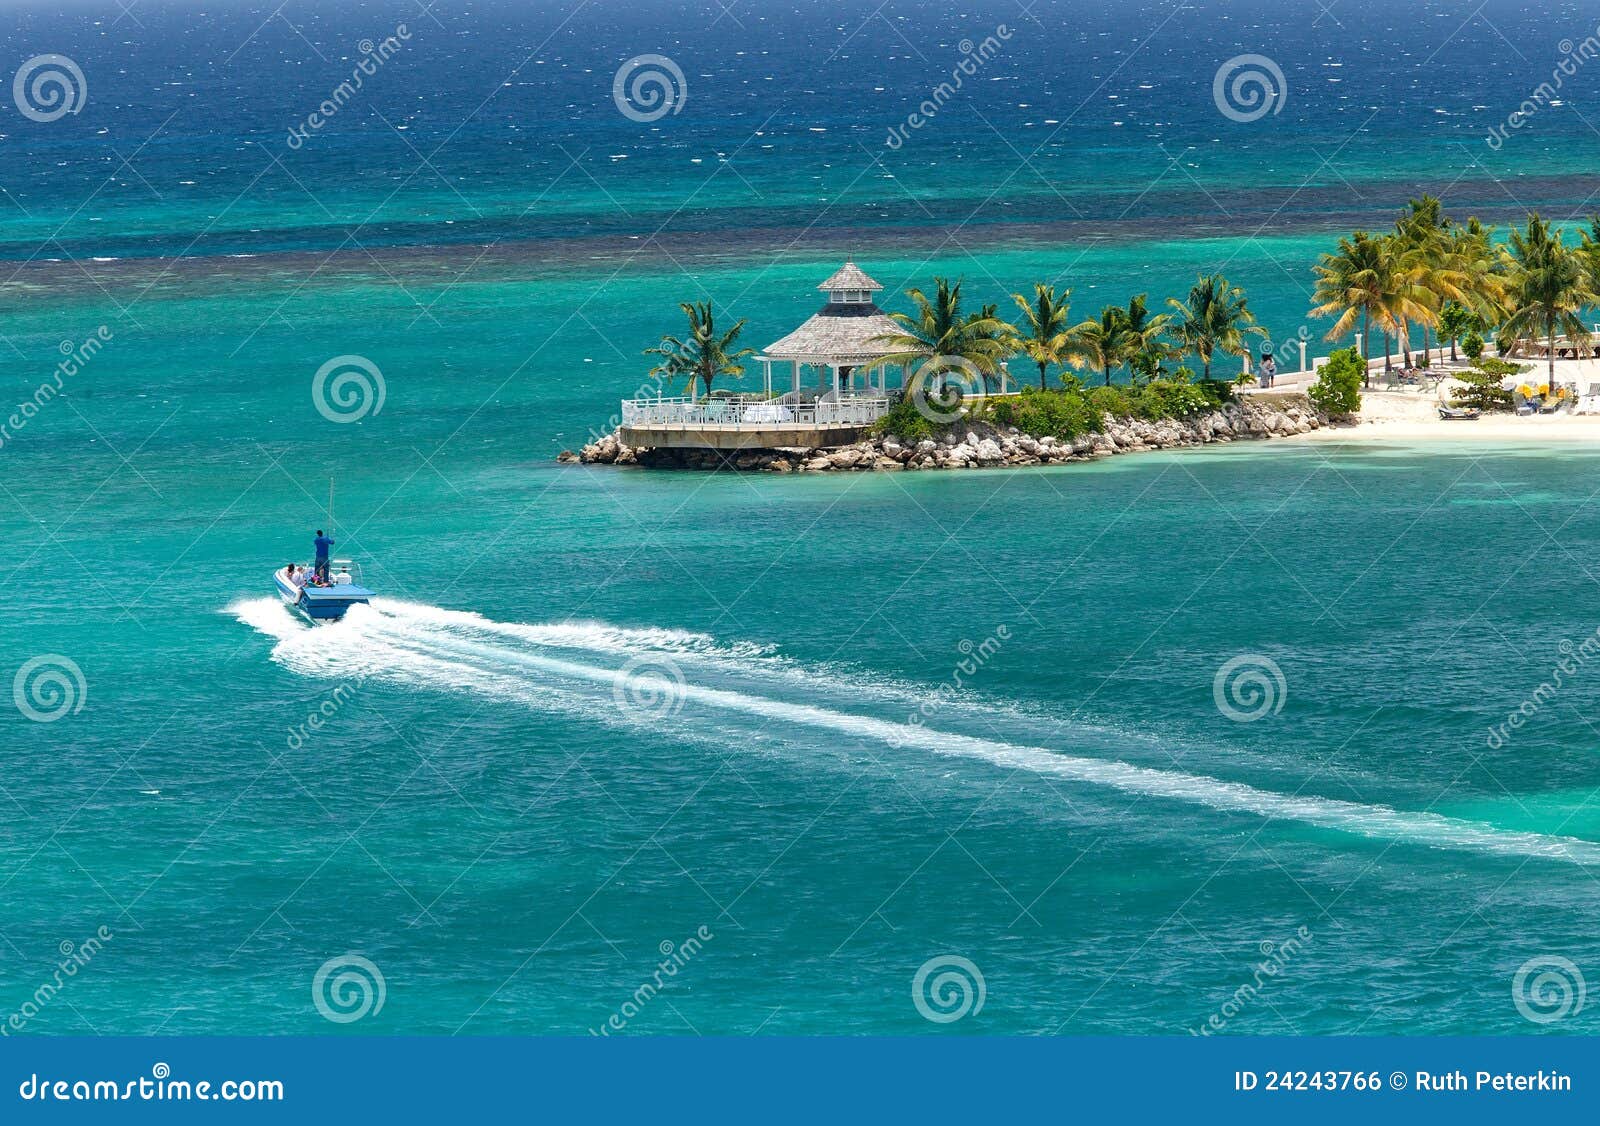 tropical island of ocho rios, jamaica